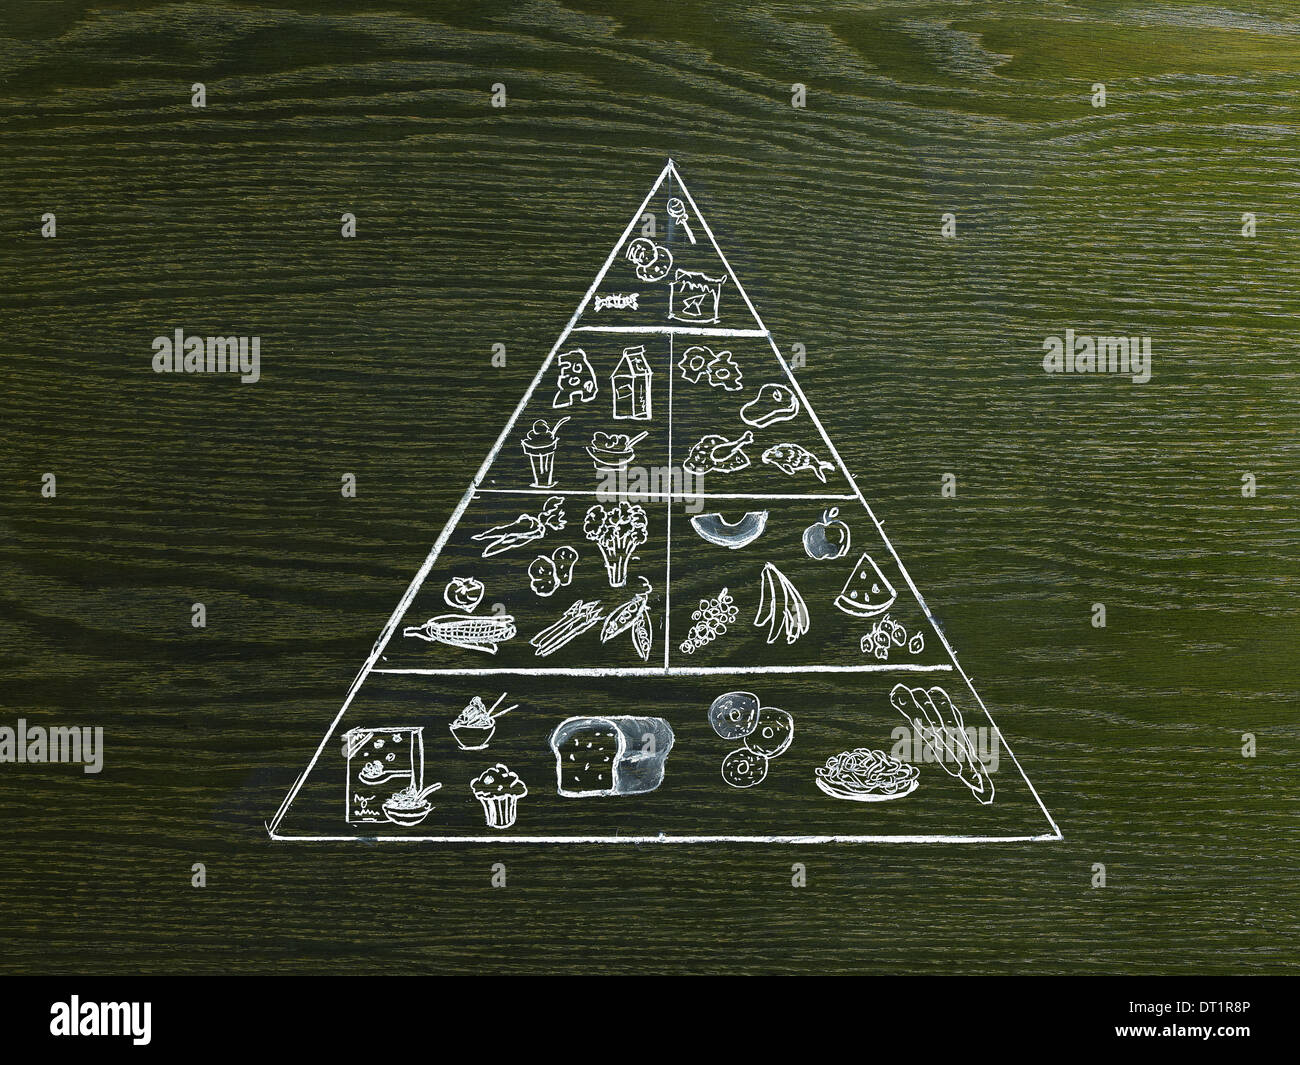 Un dessin d'image sur un fond de grain de bois naturel la pyramide alimentaire avec certains groupes d'aliments Banque D'Images